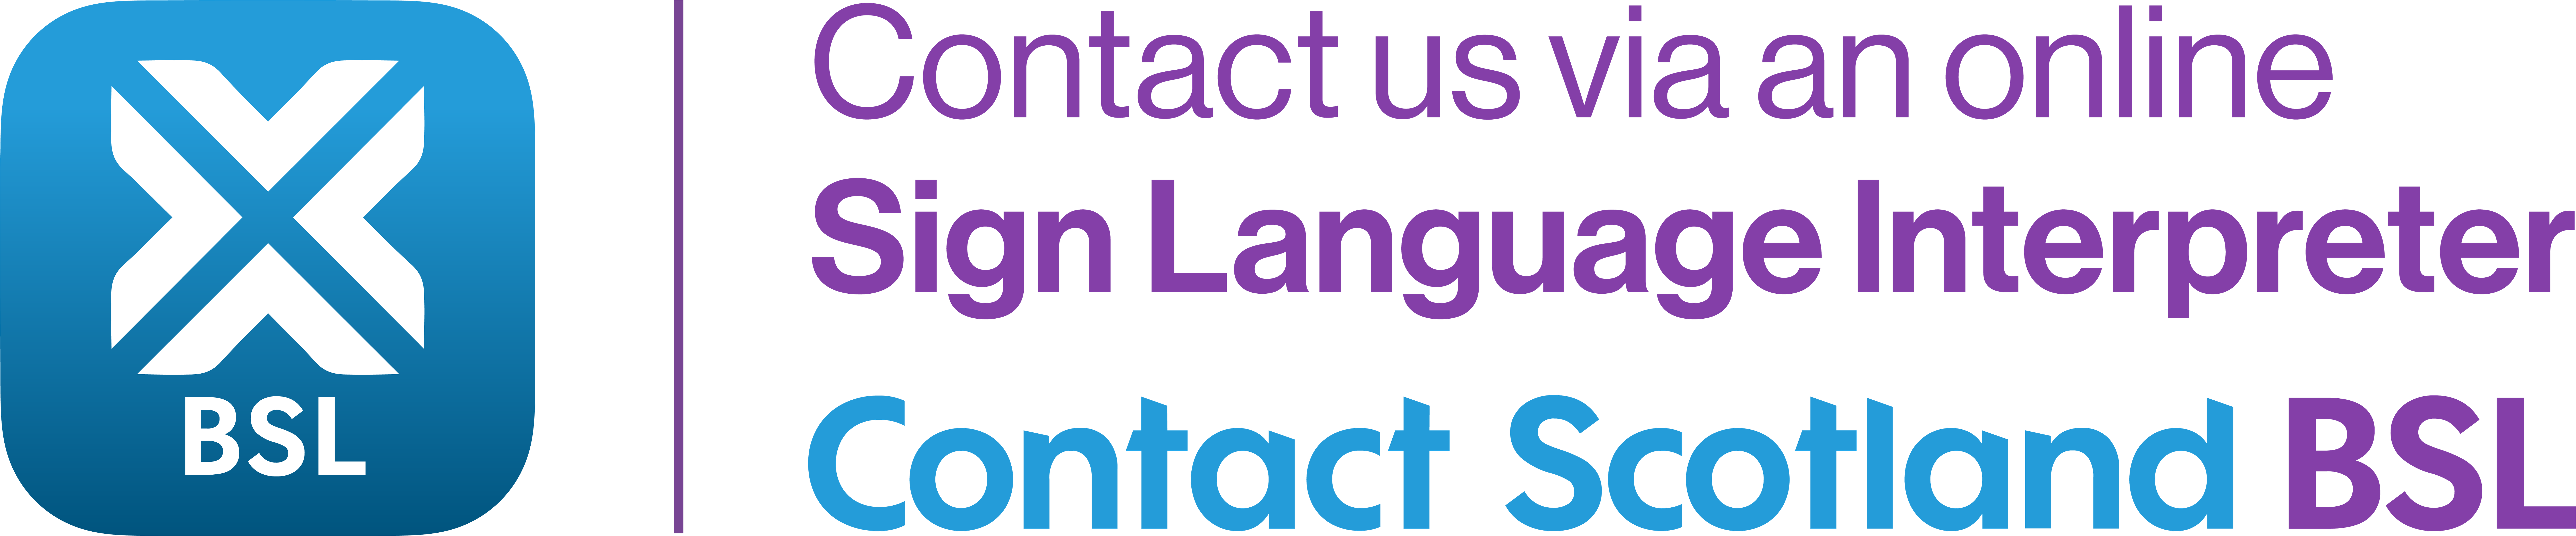 Contact Scotland BSL logo